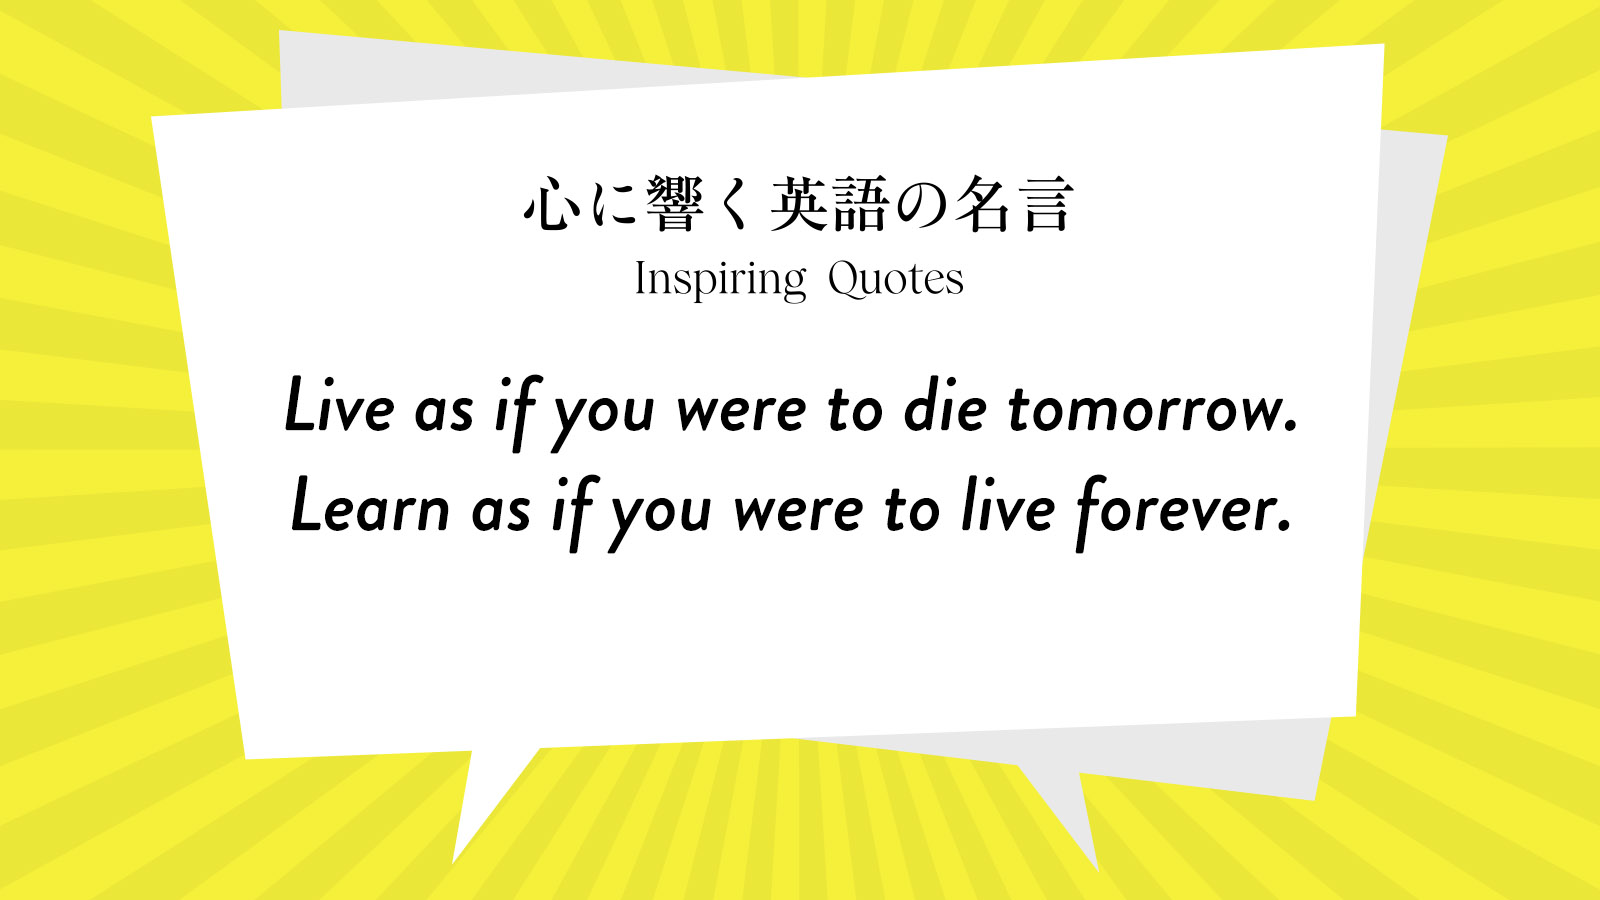 今週の名言 “Live as if you were to die tomorrow. Learn as if you were to live forever.” | Inspiring Quotes: 心に響く英語の名言